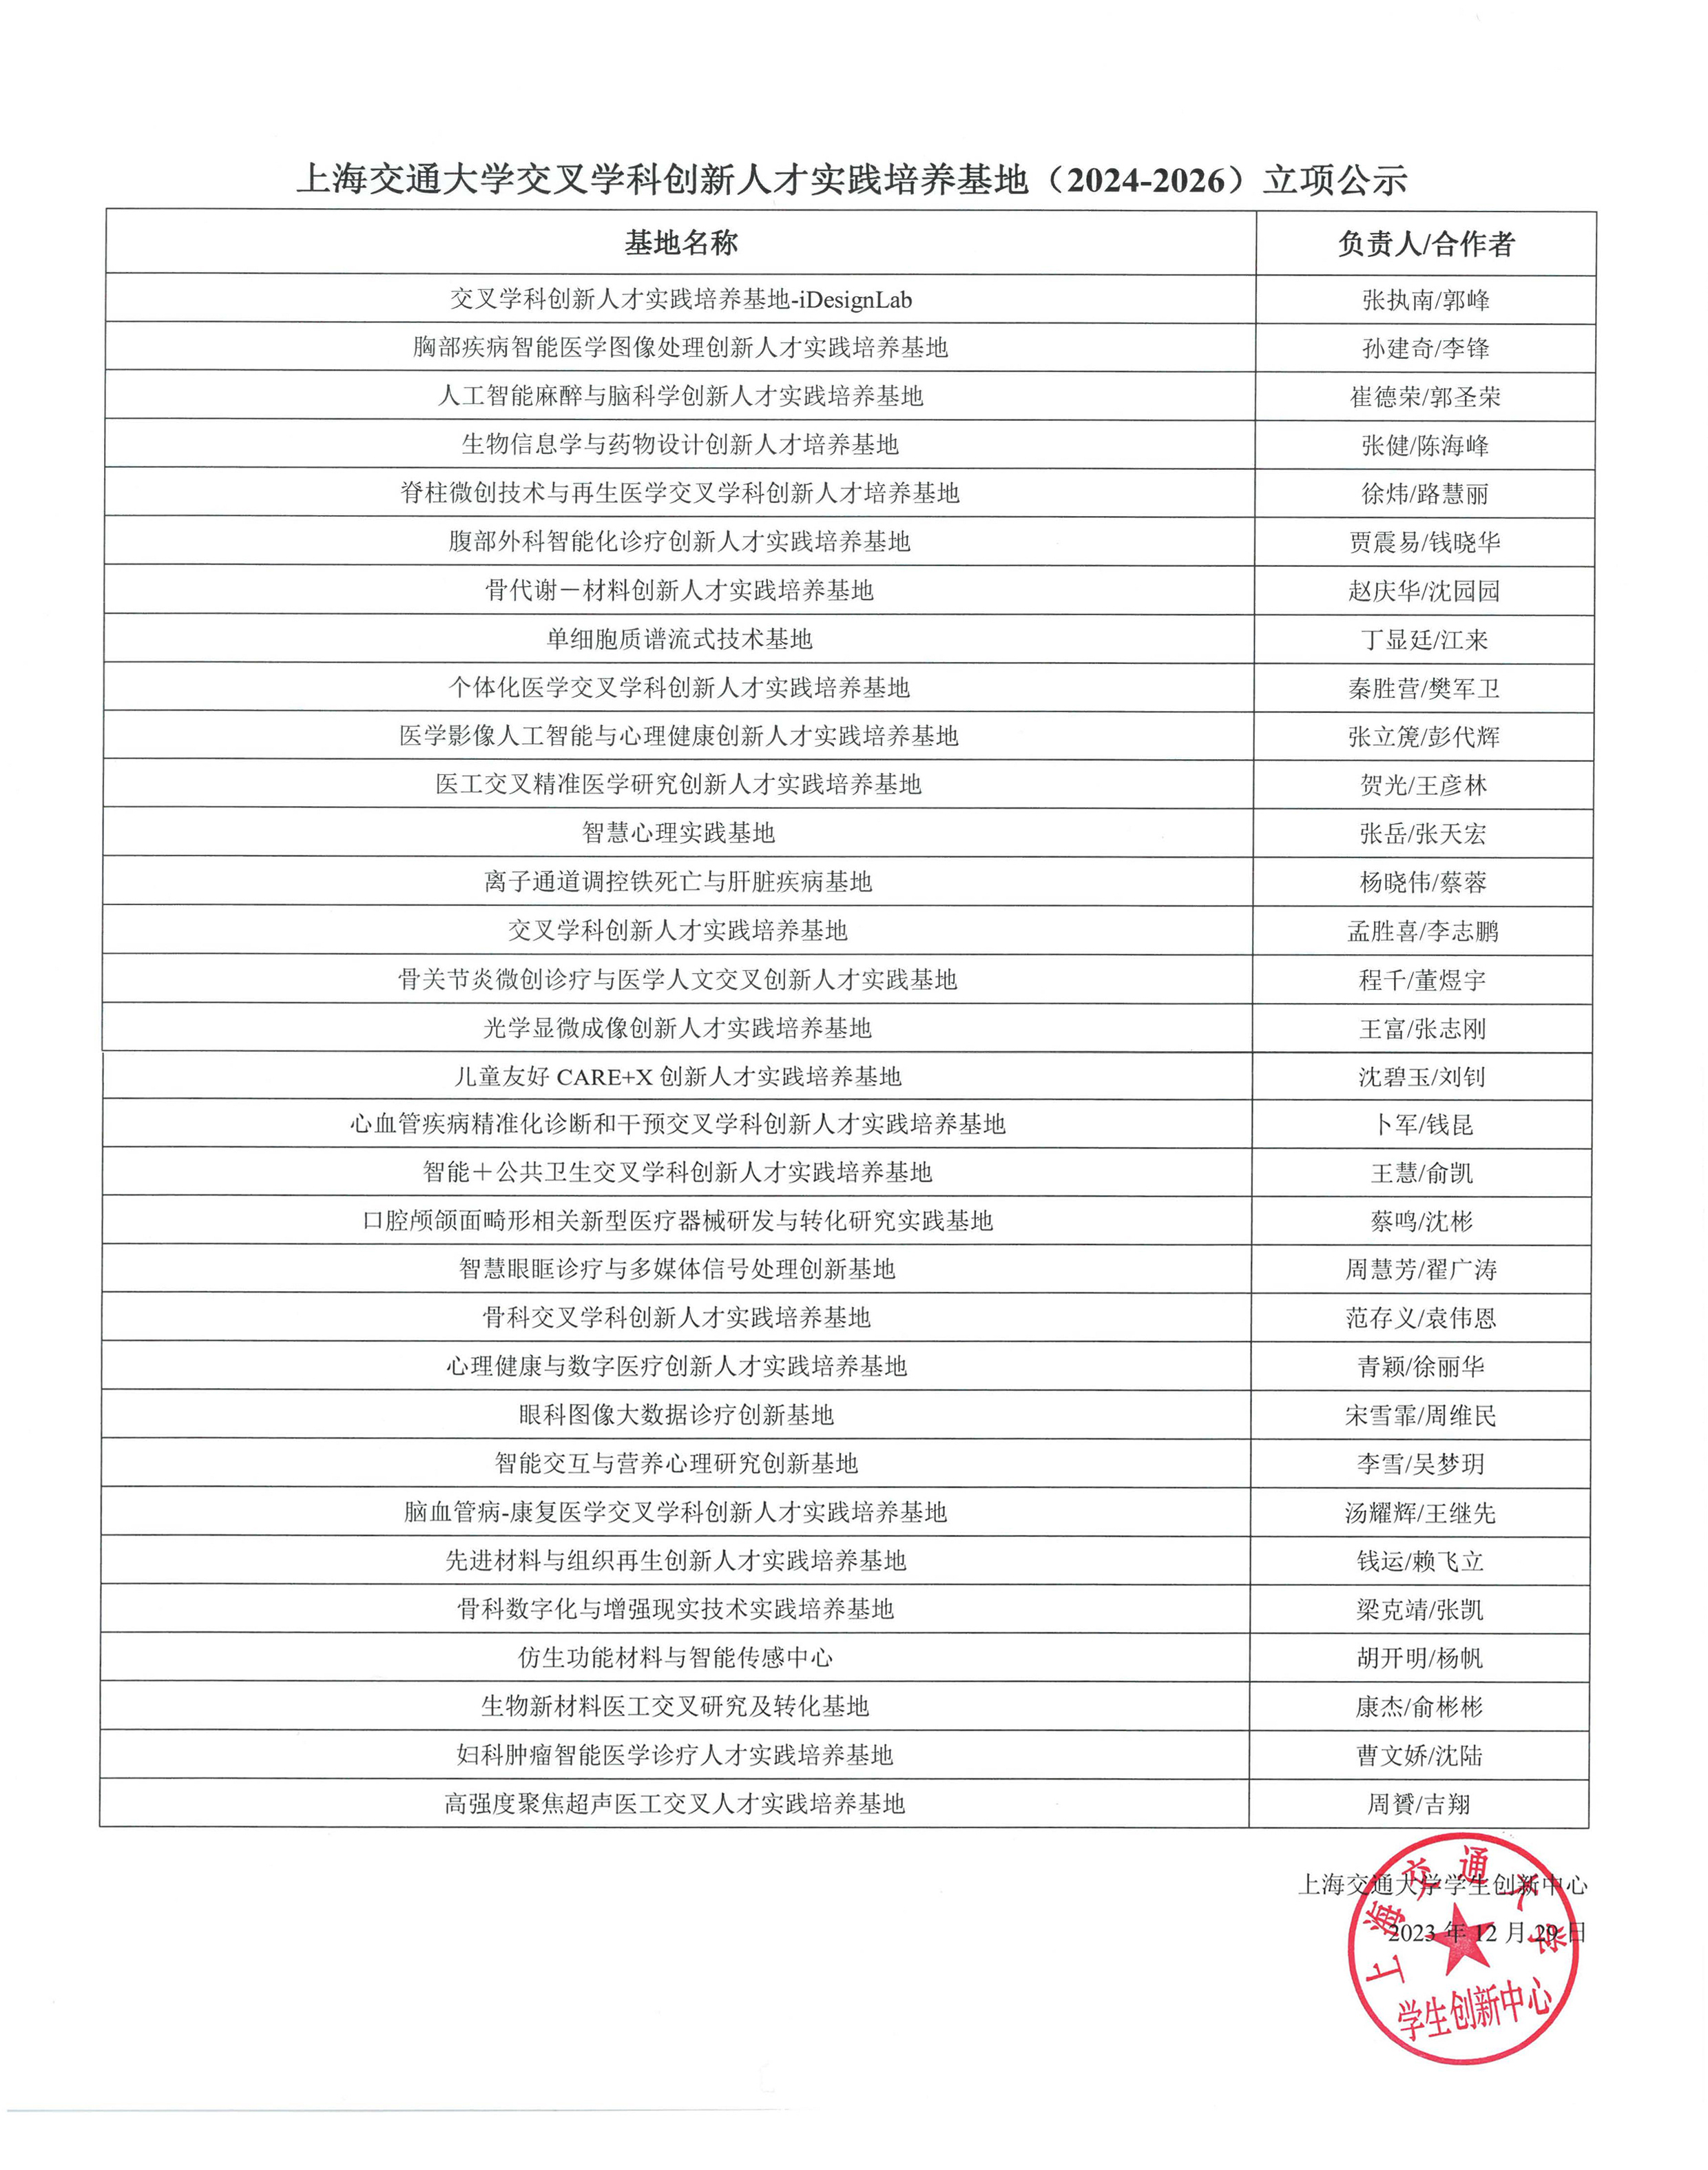 上海交通大学交叉学科创新人才实践培养基地 (2024-2026)立项公示.jpg